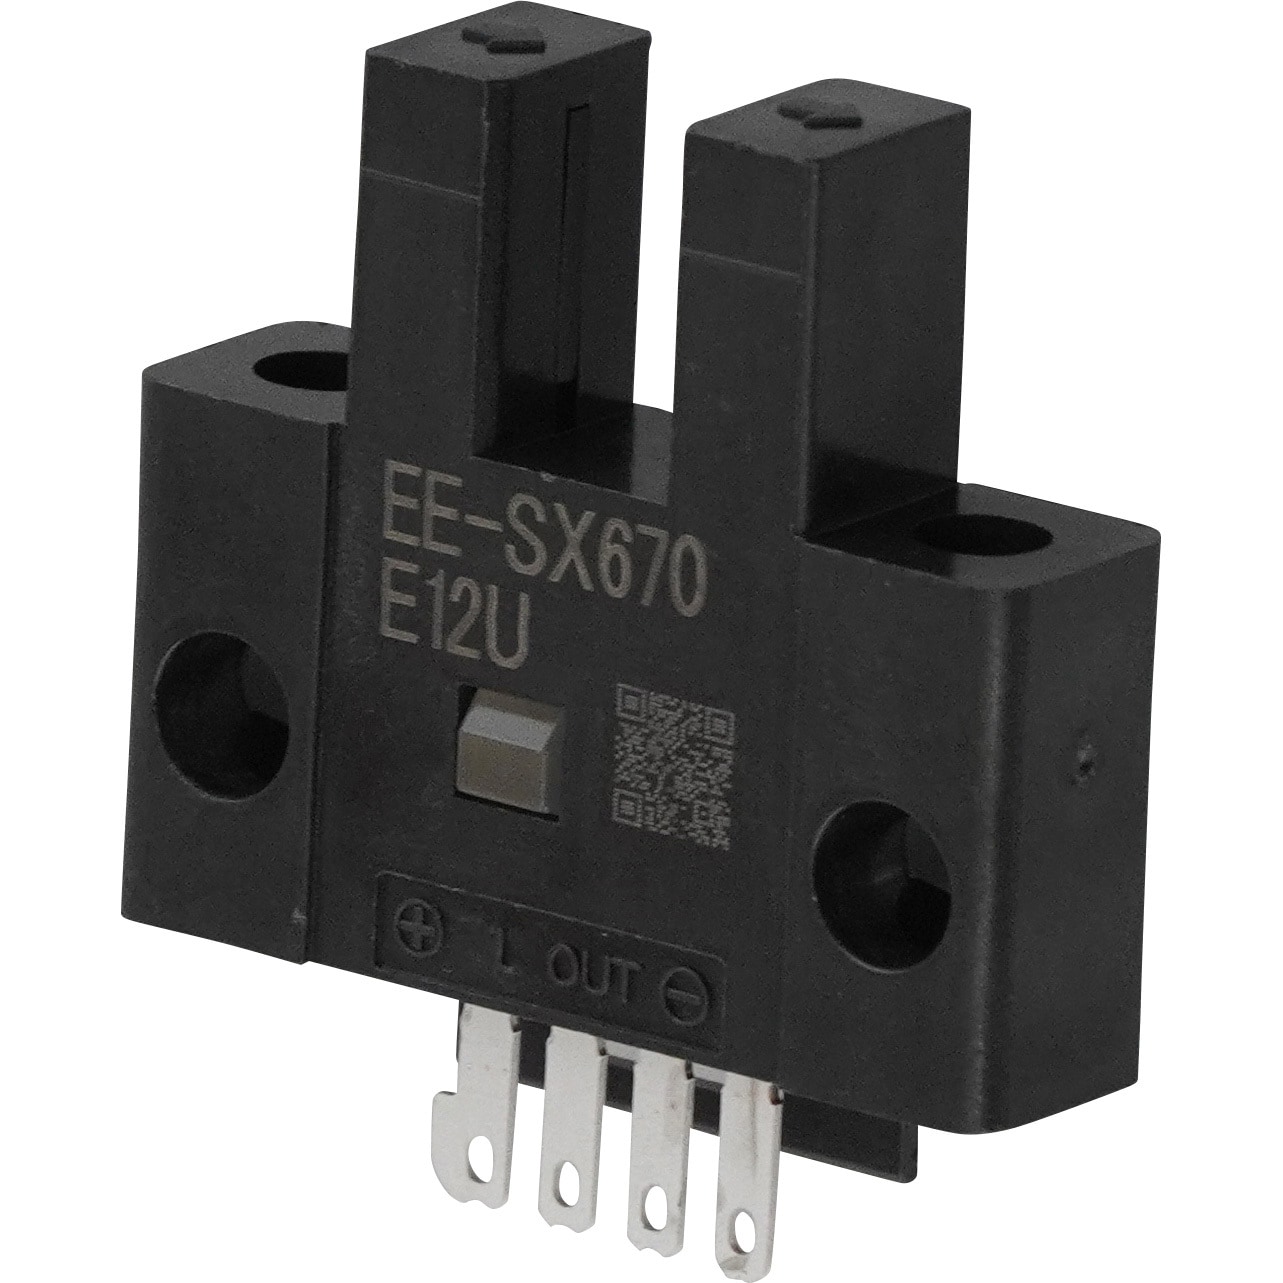 EE-SX670 フォト・マイクロセンサ 溝型コネクタ/コード引き出しタイプ 